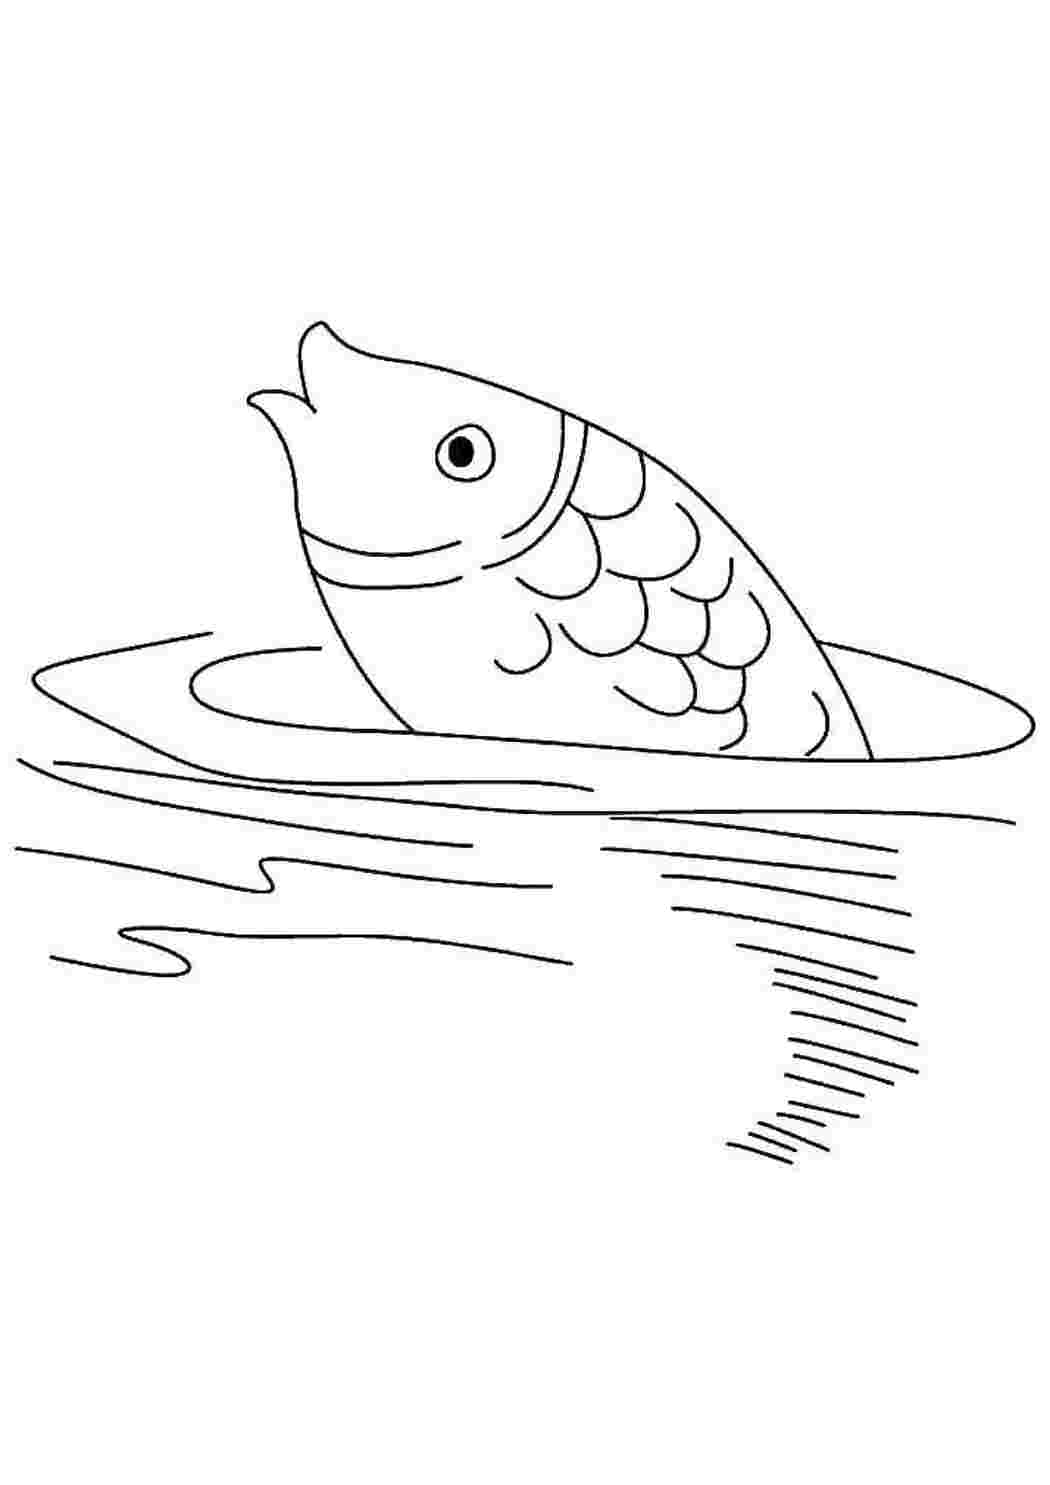 Раскраска пруд с рыбками для детей